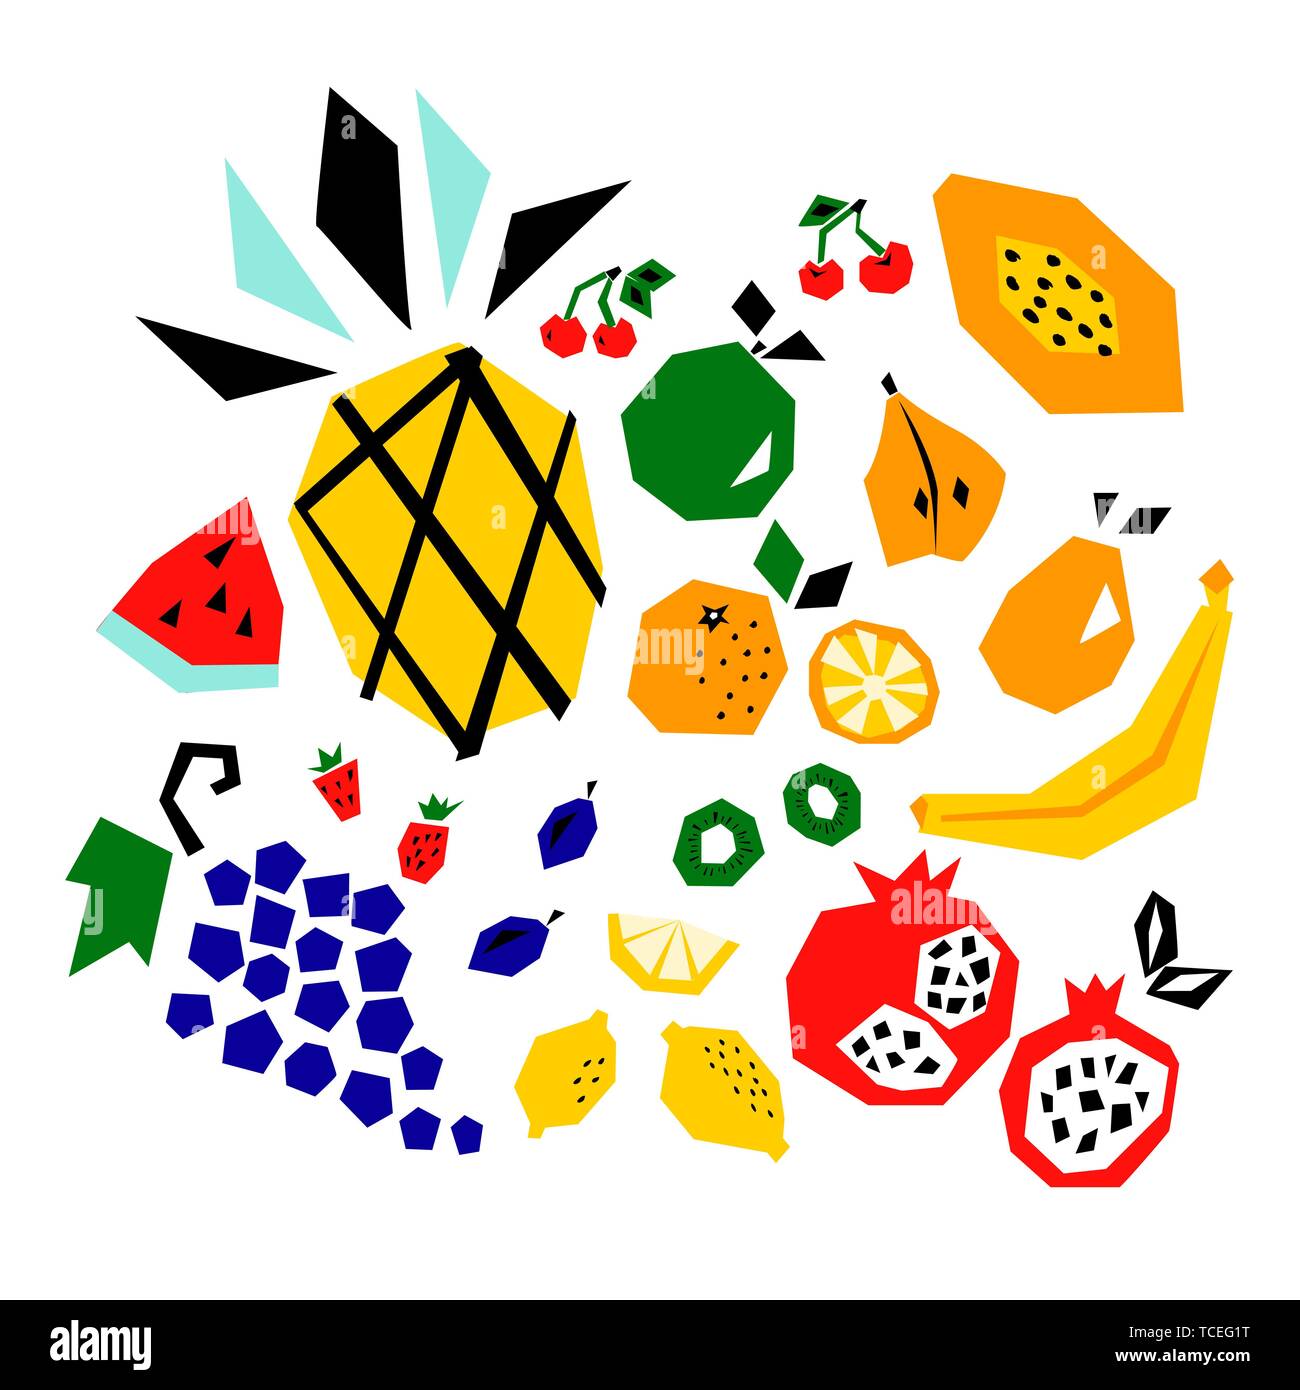 Il vettore gruppo isolato di intaglio frutta ananas, mela, arance, kiwi, pere, i limoni, le ciliege, le fragole. Illustrazione Vettoriale. Illustrazione Vettoriale